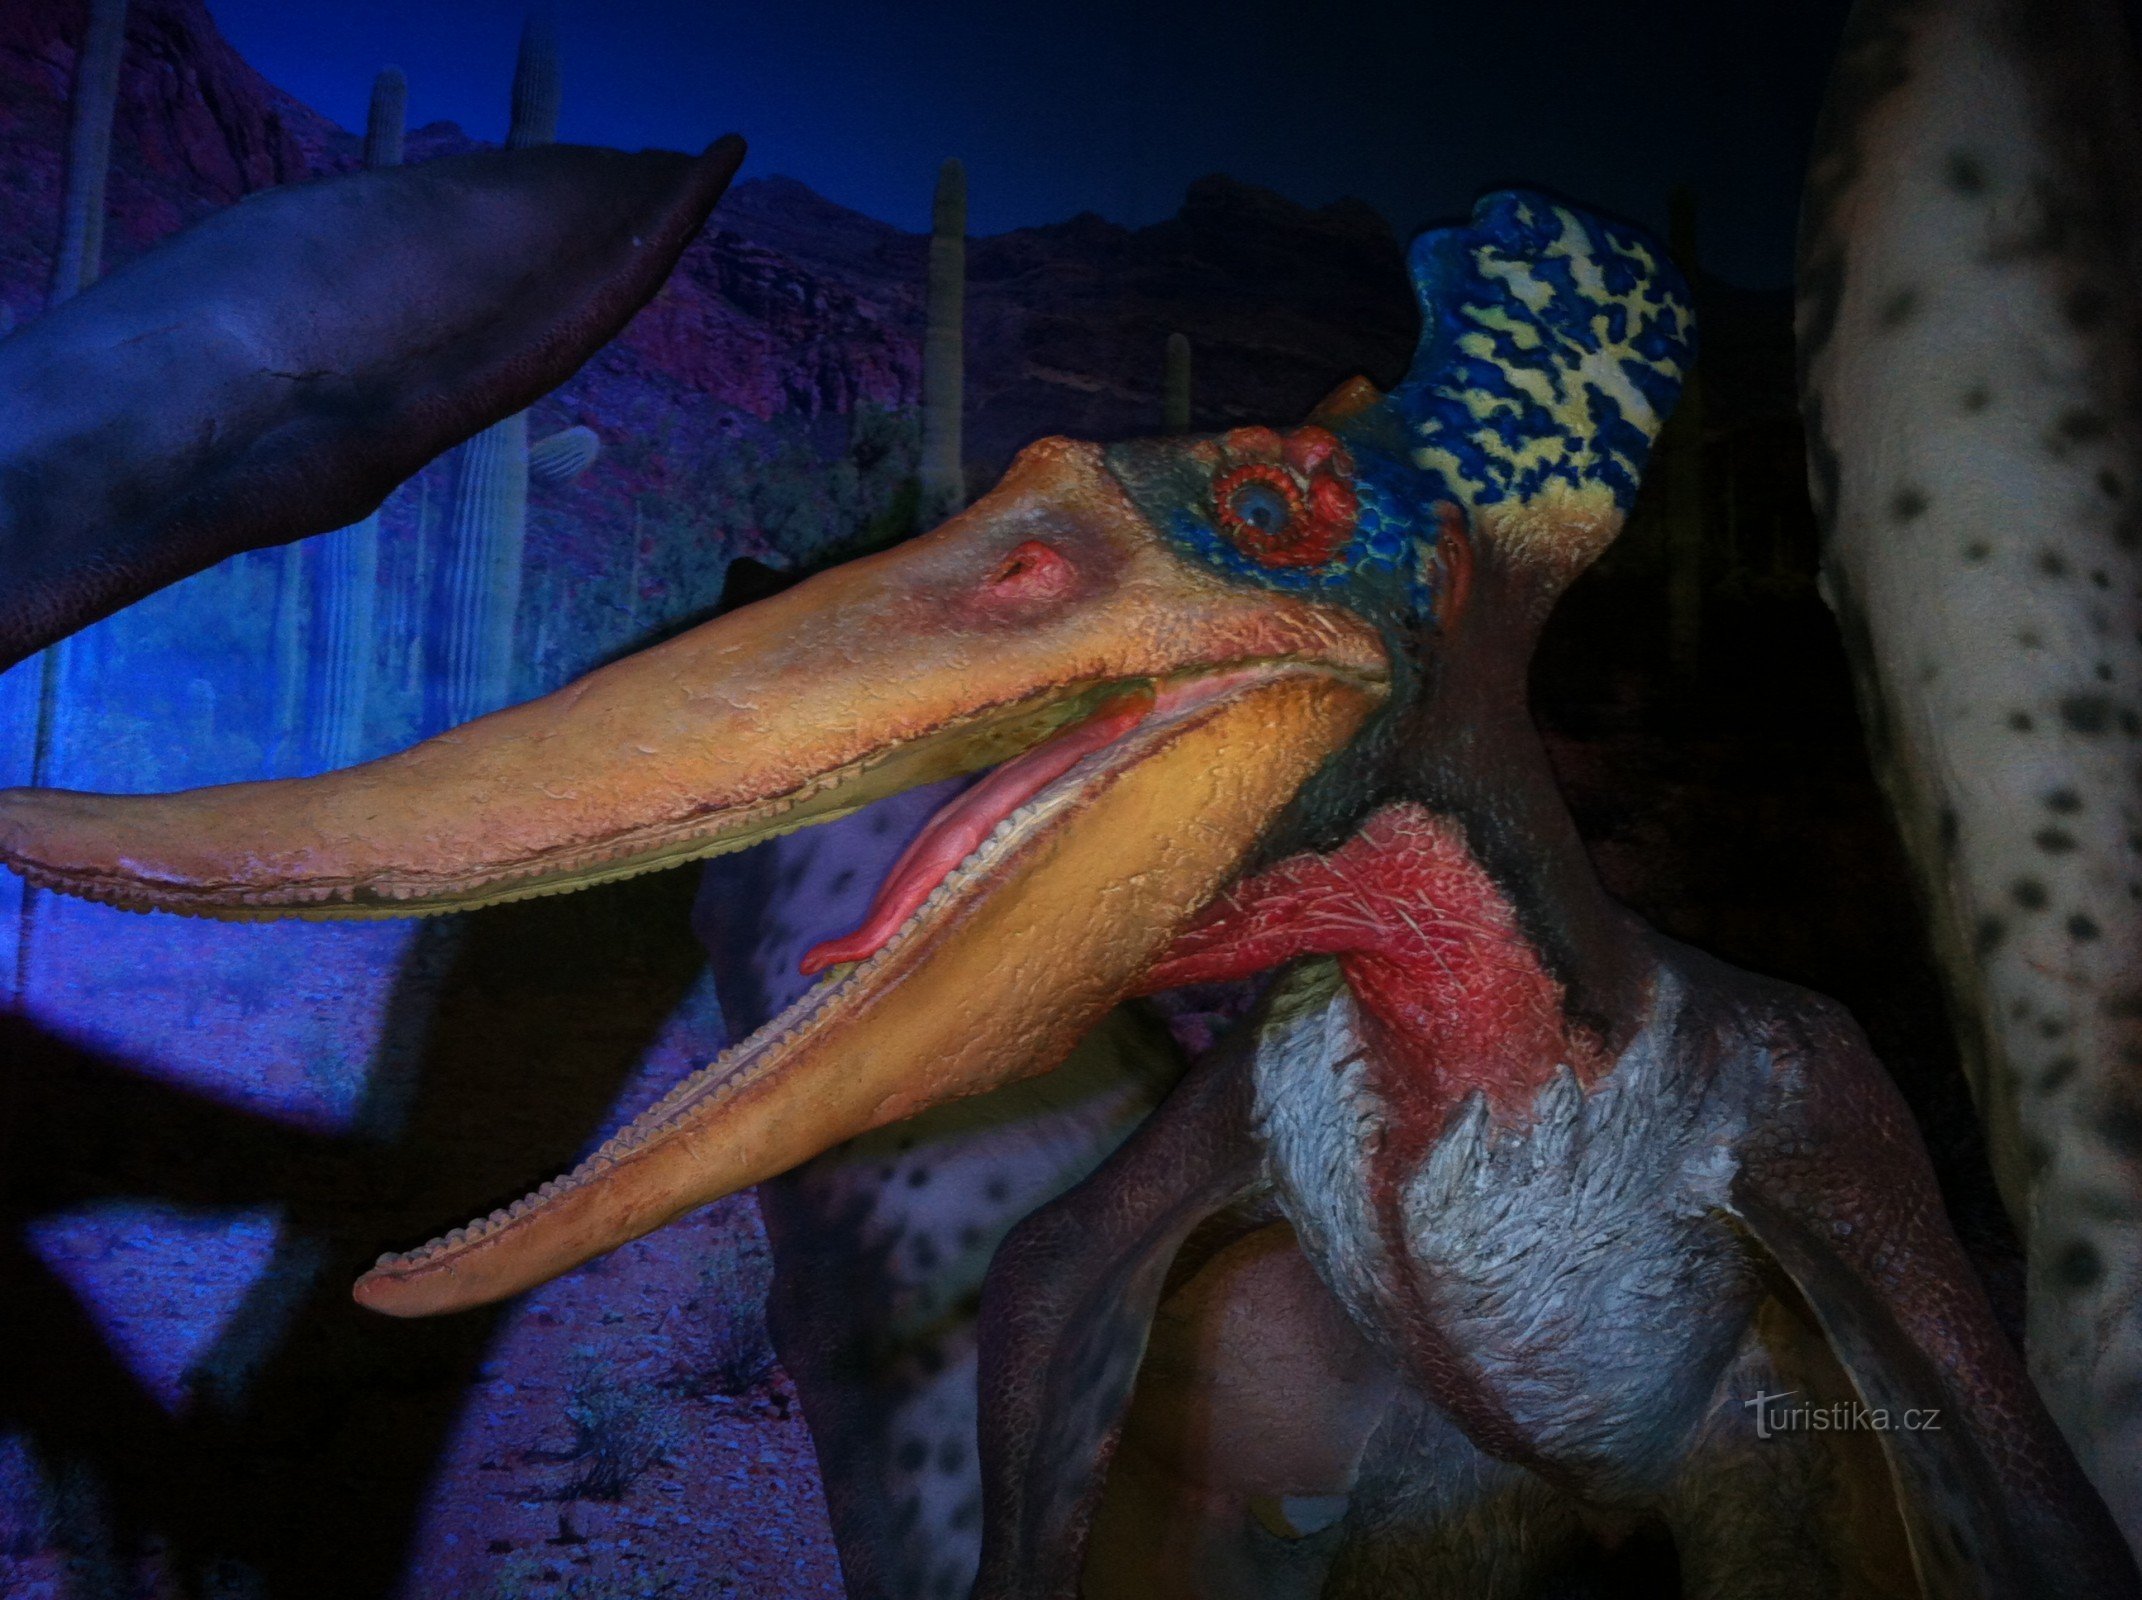 UNIQUE EXHIBITION Return of the Dinosaurs - DinoPark Tour 2015